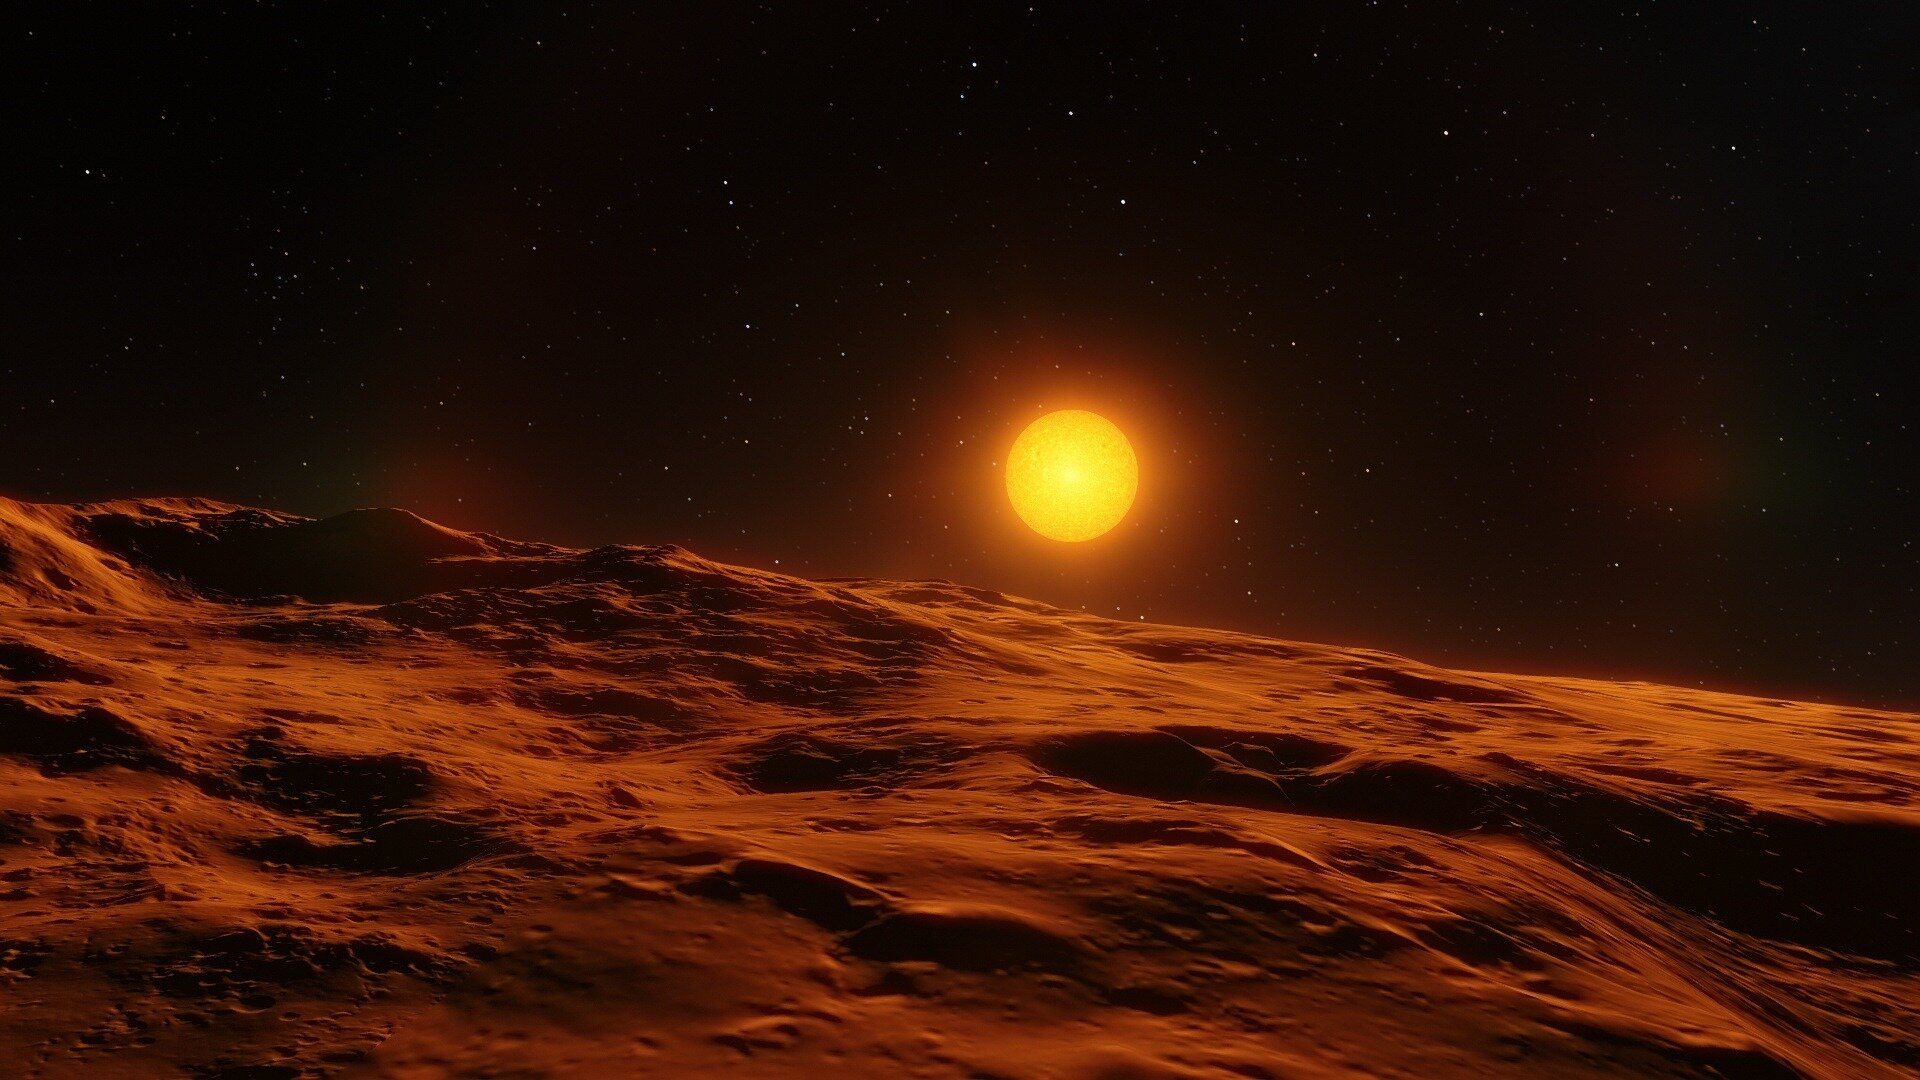 Widok na młoda gwiazdę podobną do Słońca z krążącą wokół niej planetą. Źródło: CC0 Public Domain